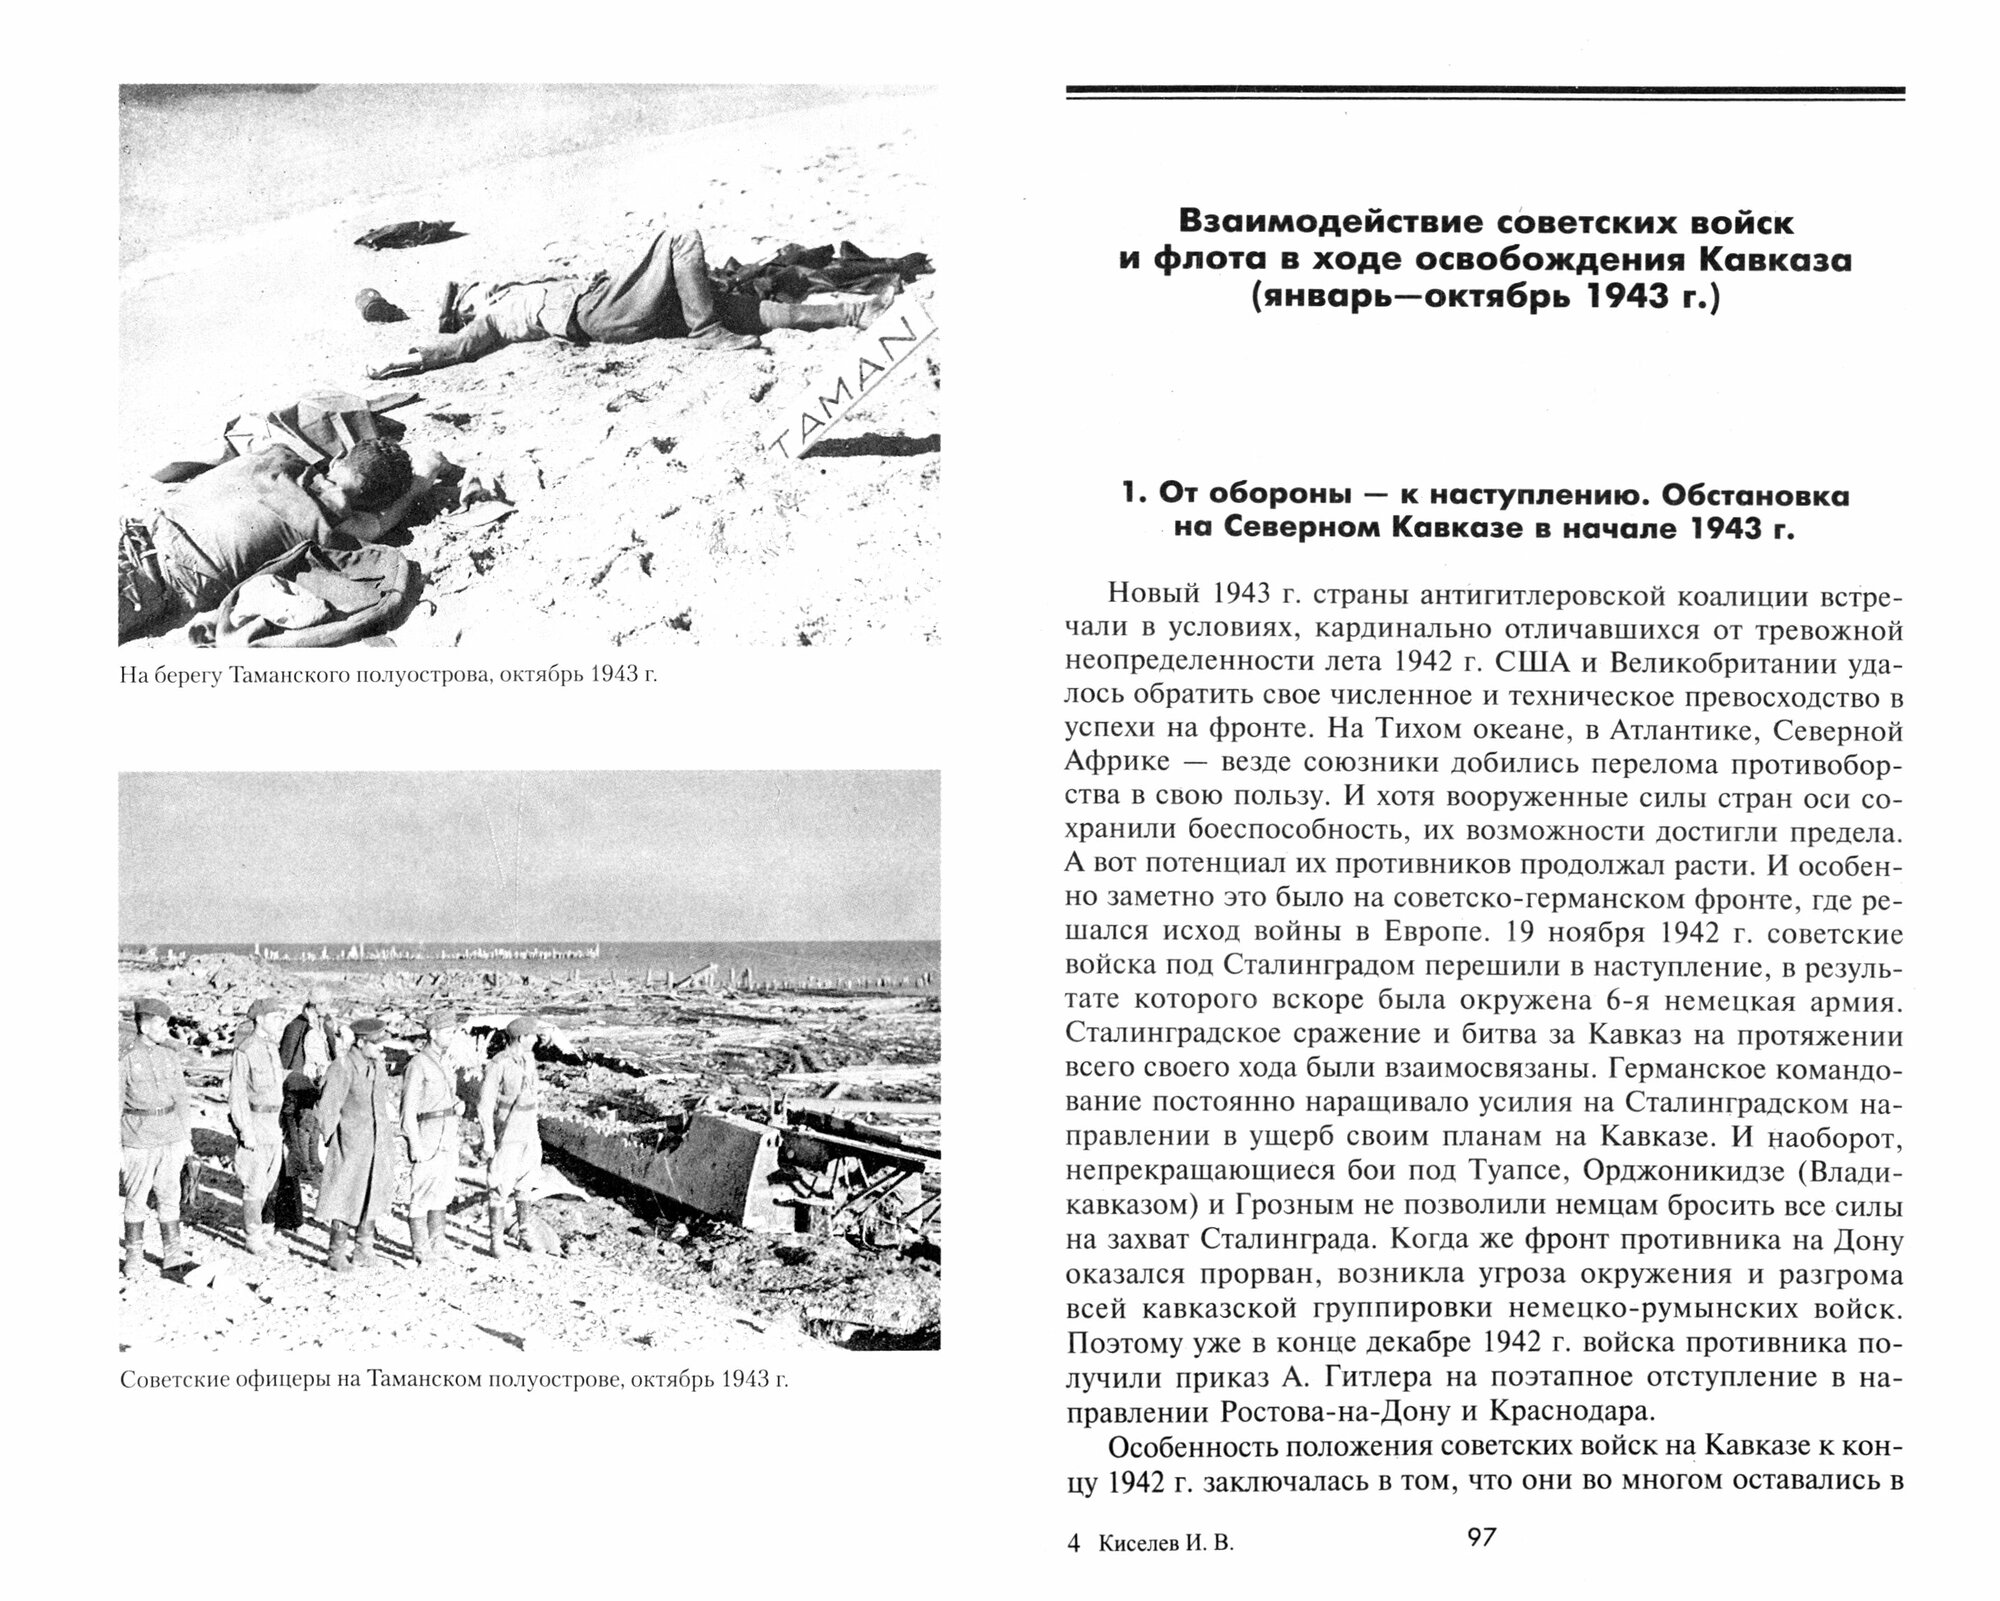 Армия и флот в битве за Кавказ Совместные операции на Черноморском побережье 1942 1943 гг - фото №2